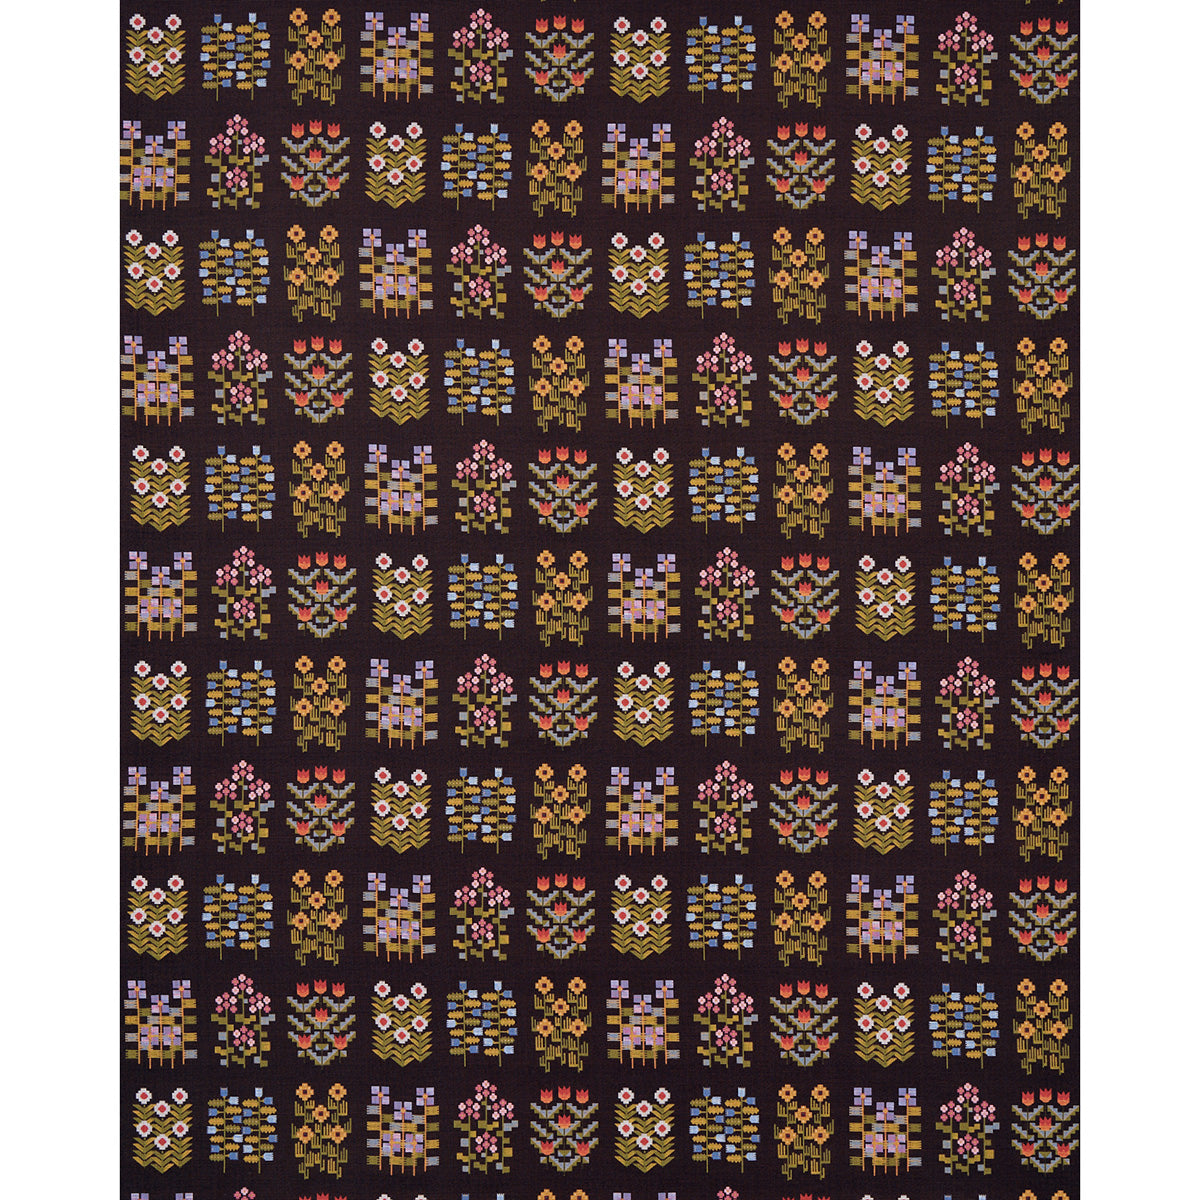 Humboldt Haberdashery Floral Tape Paper 1.2 cm Wide - 25 Meters - Brown